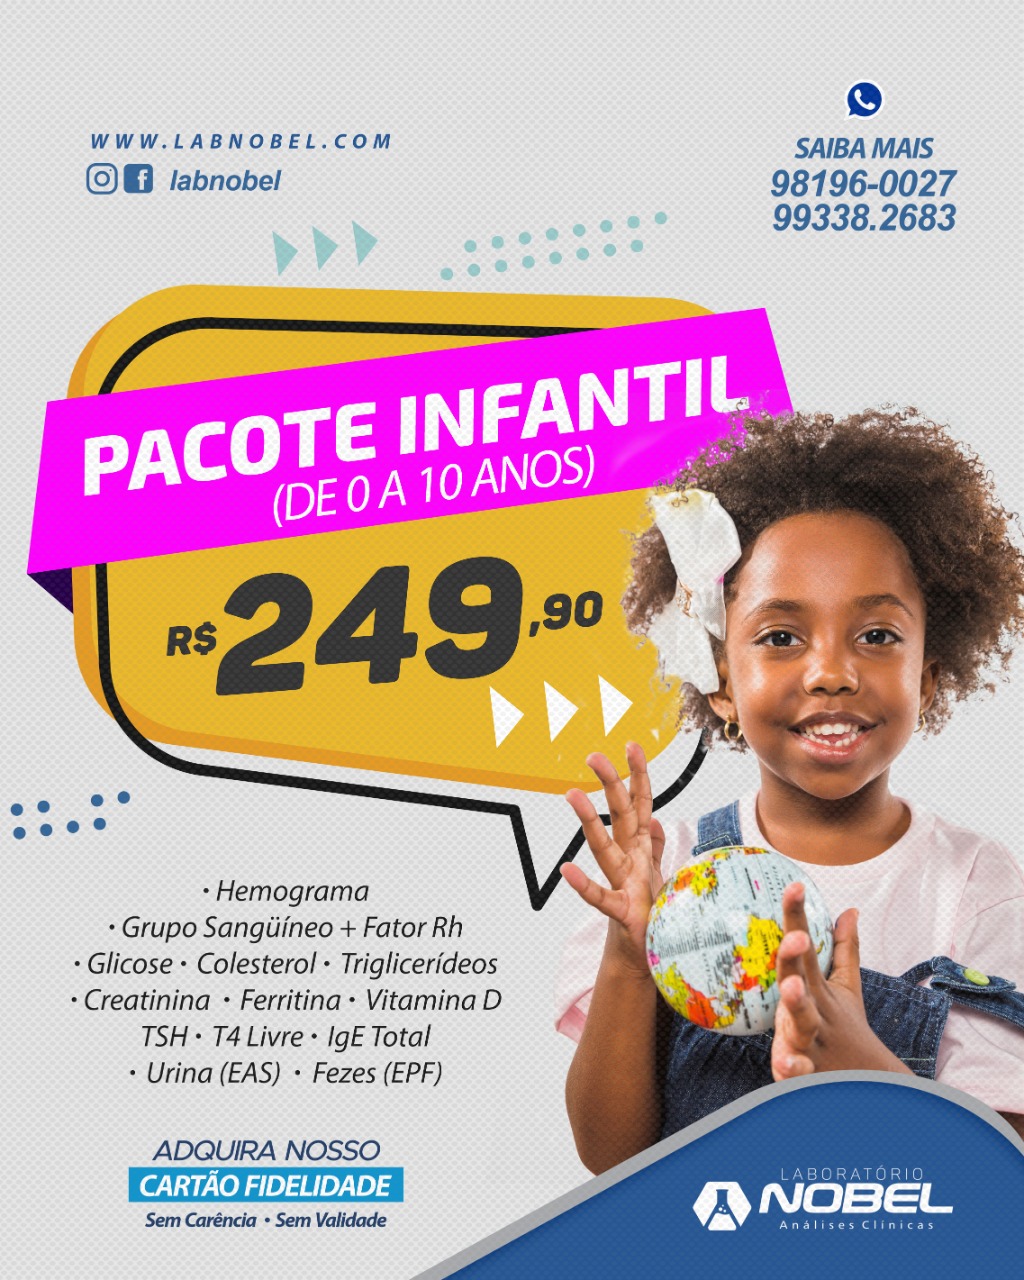 Pacote Infantil